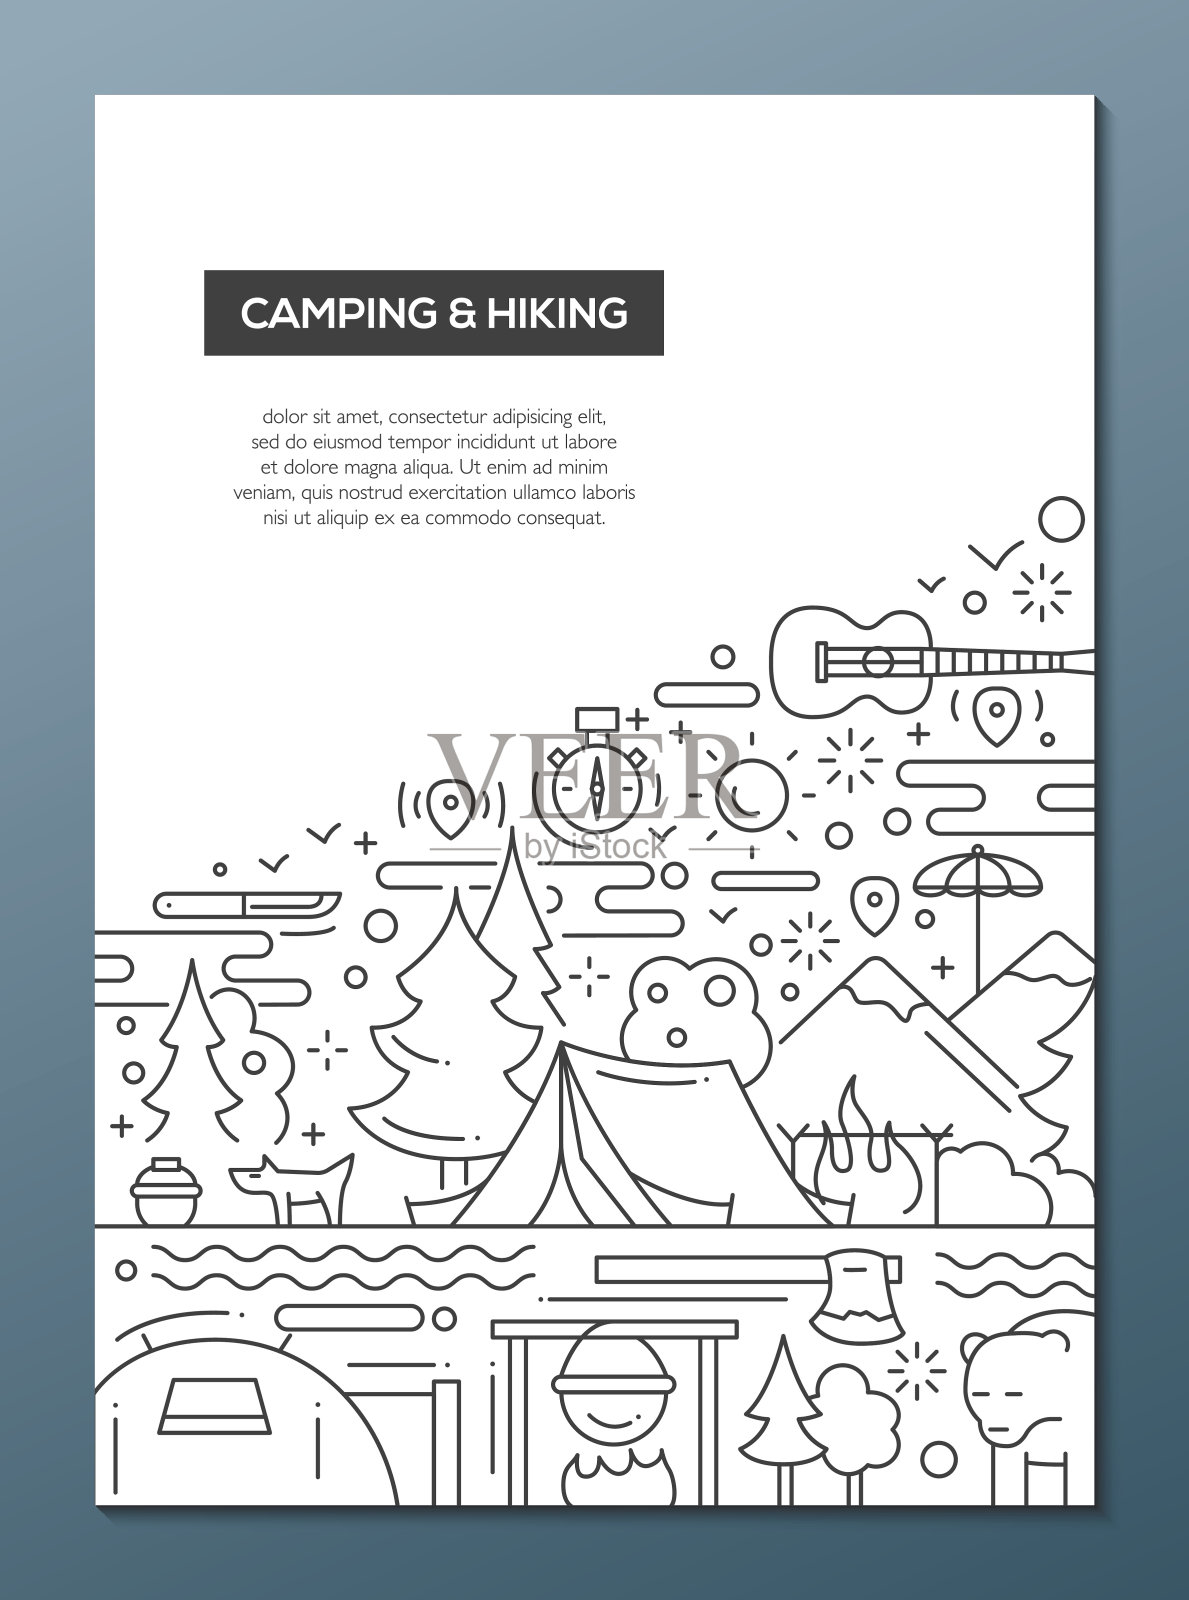 露营和远足路线设计宣传册海报模板A4设计模板素材